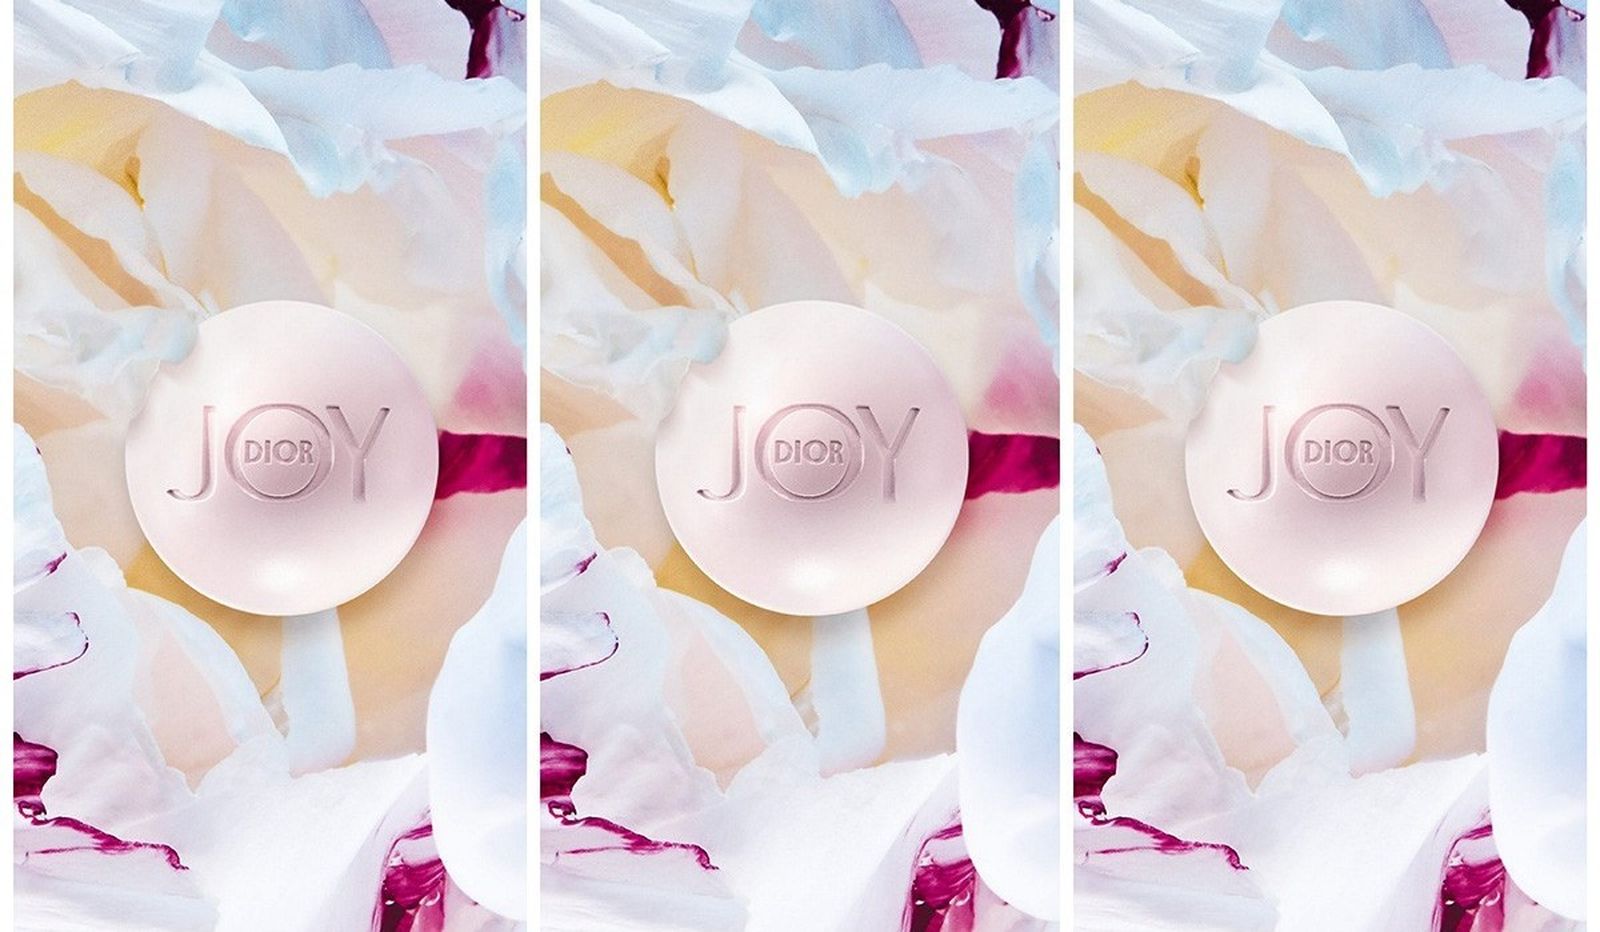 Словно жемчужина: душистое мыло Joy by Dior с ароматом бесконечного счастья